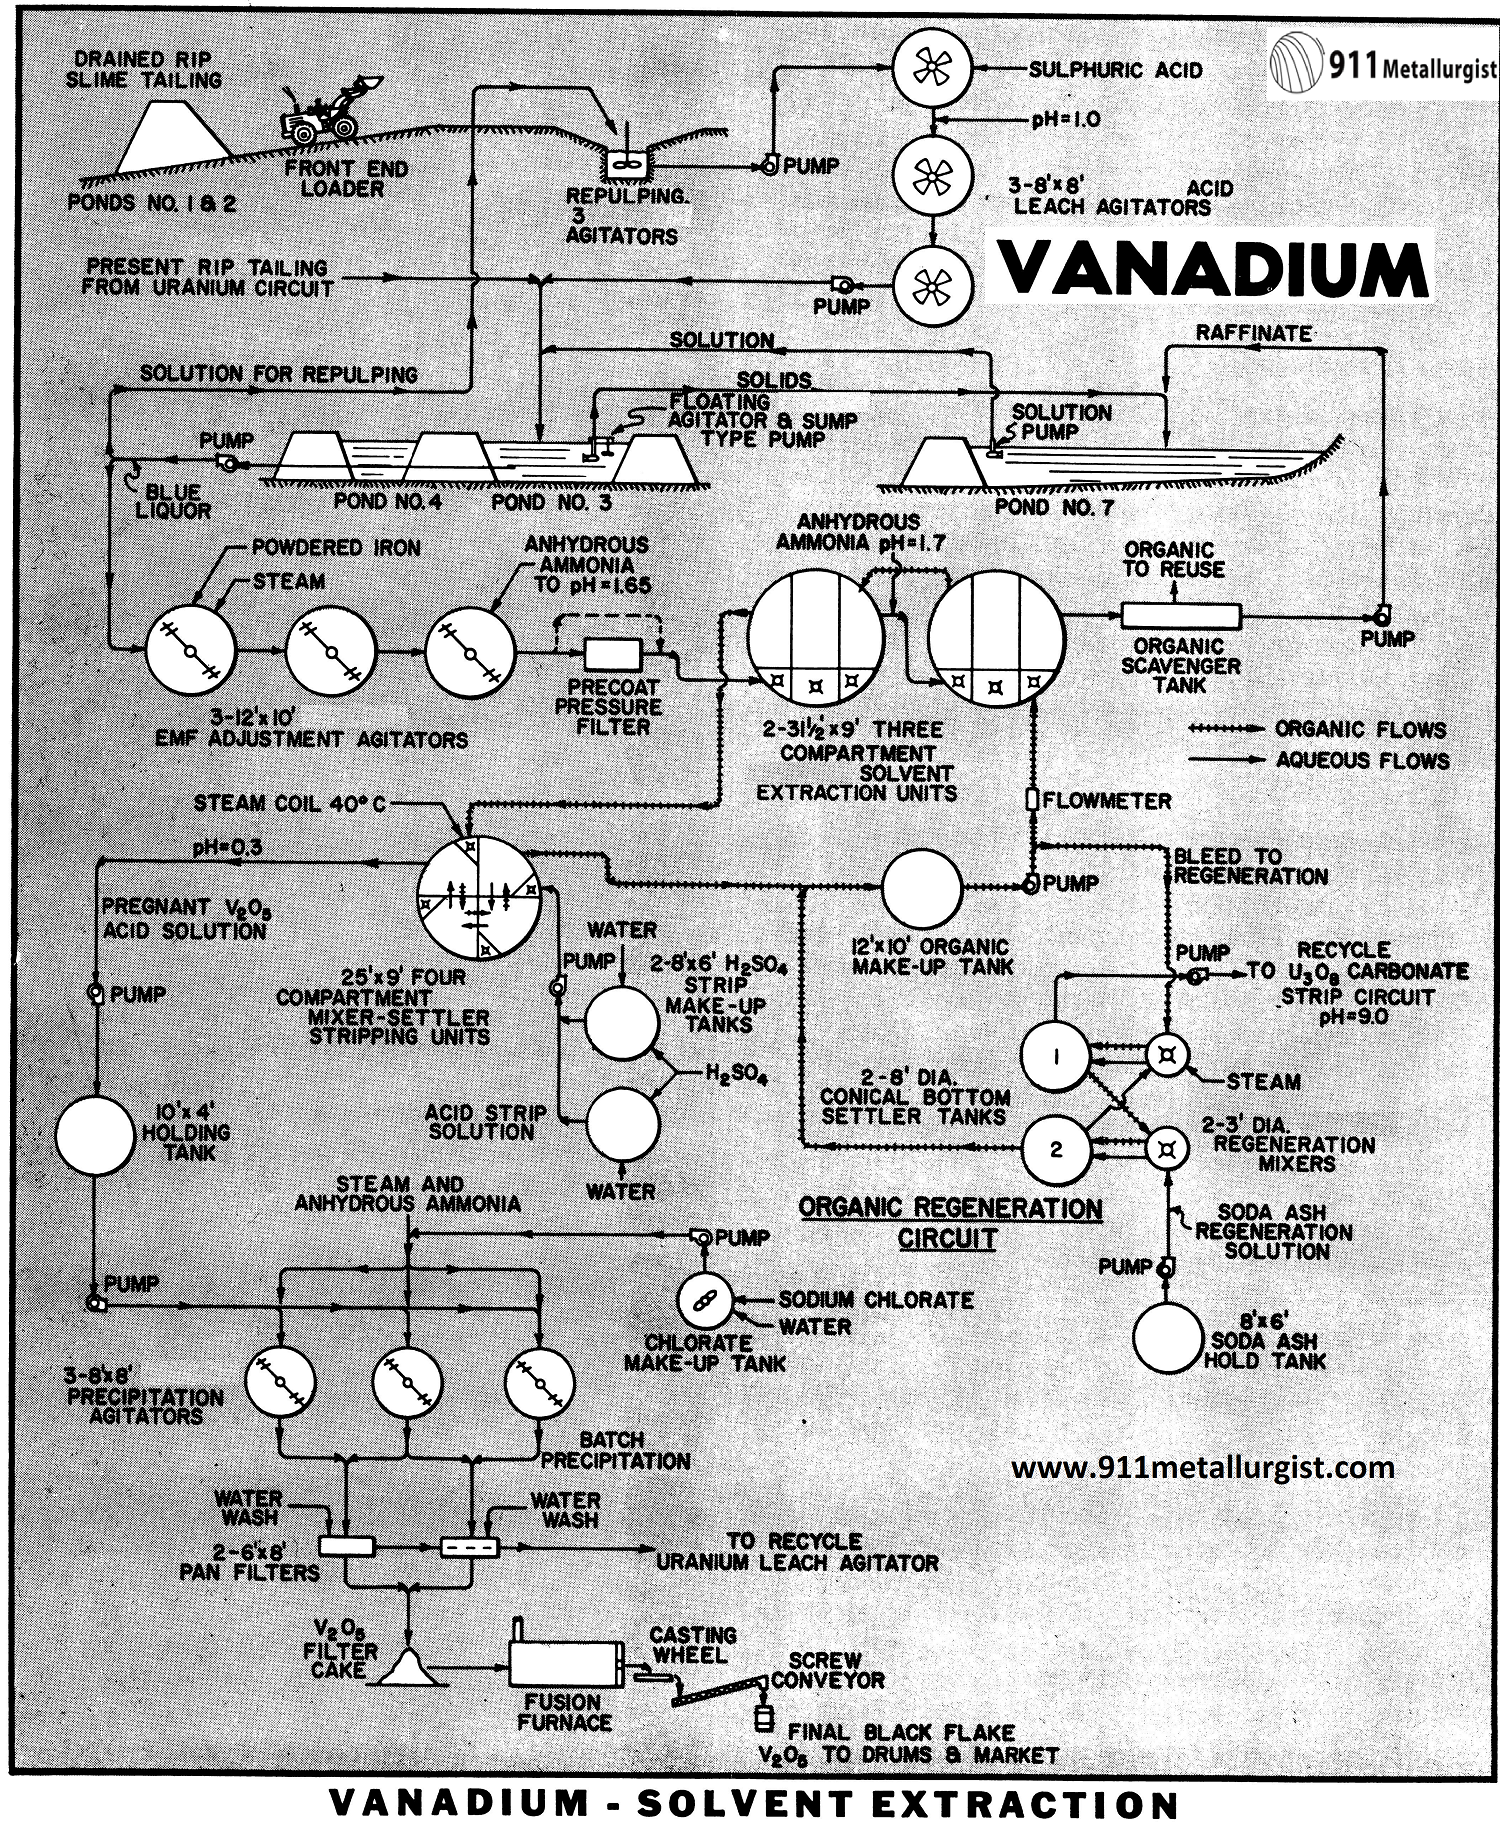 Vanadium-Solvent Extraction